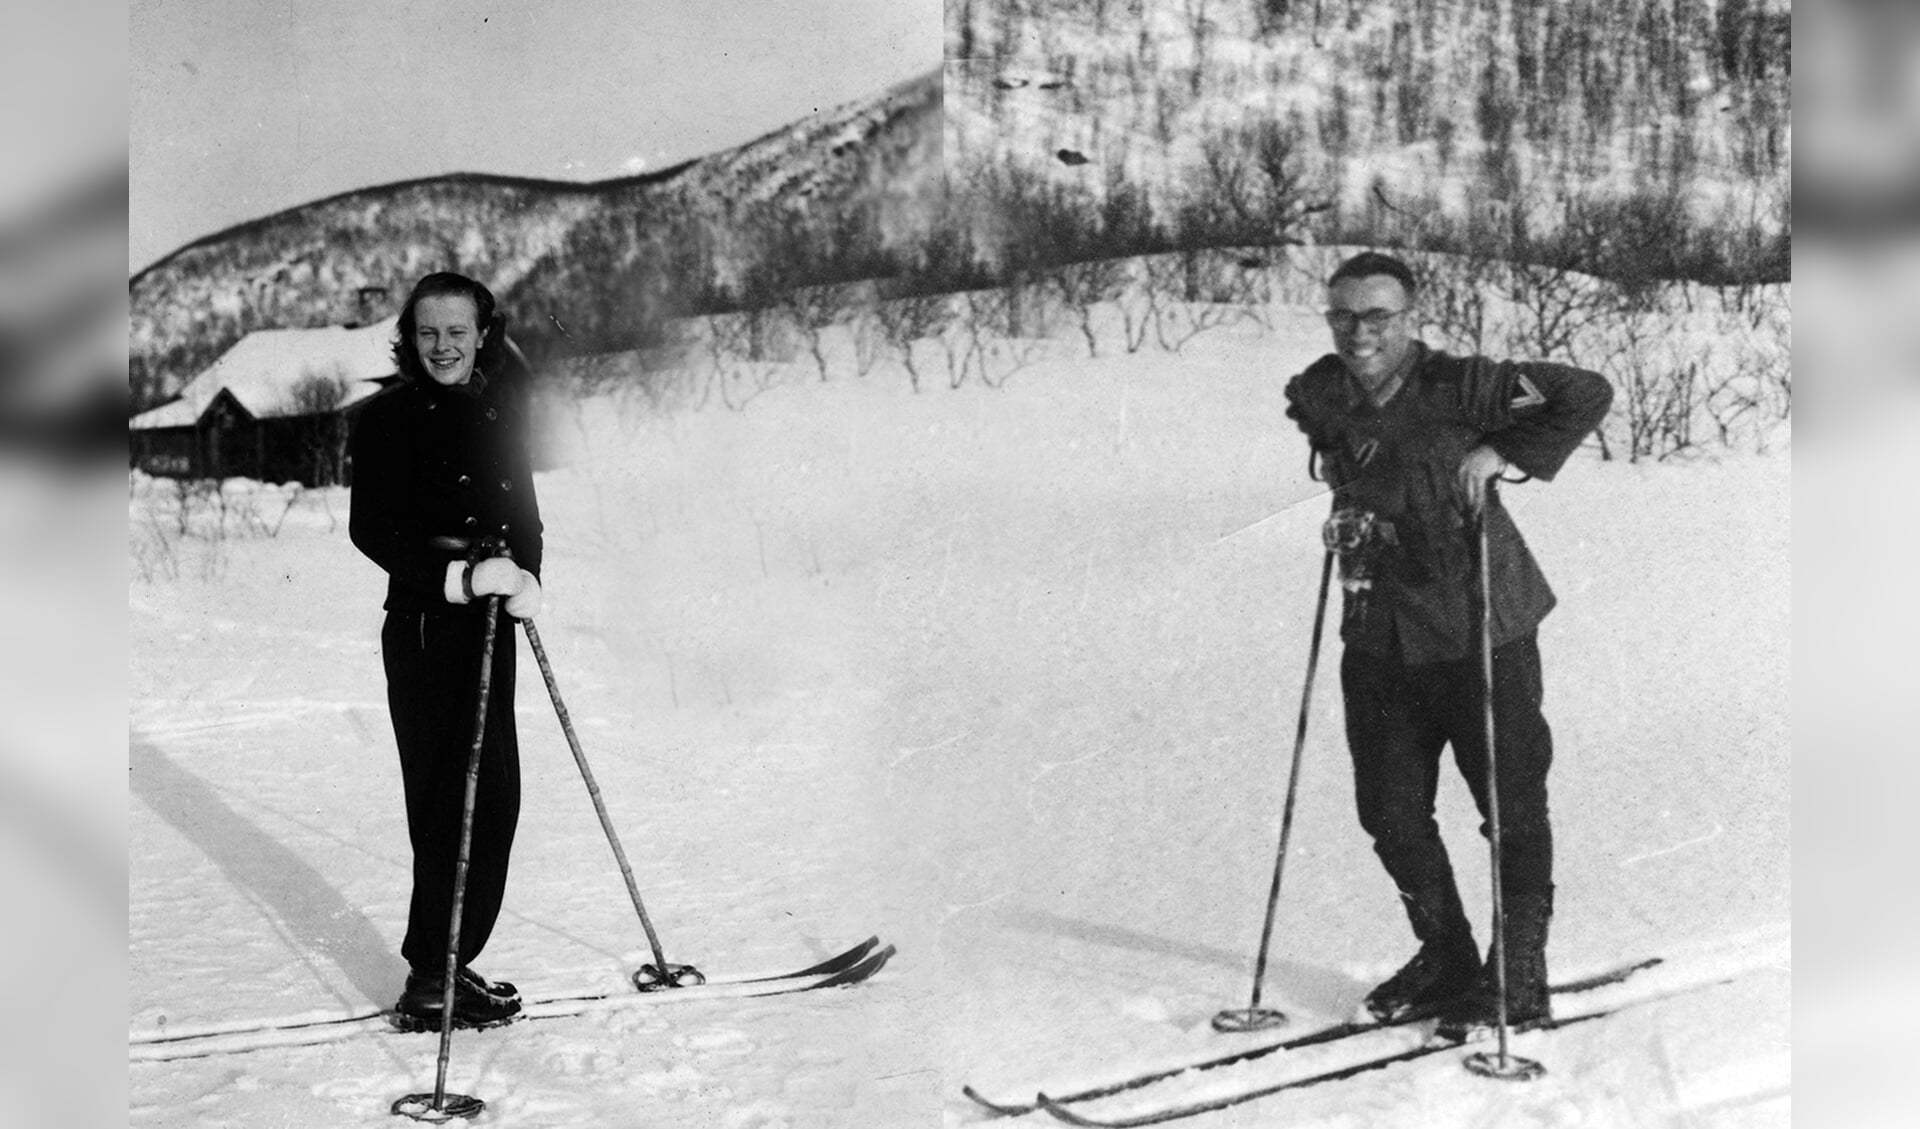 Norske Lillian og tyske Helmut tog ofte ud og stod på ski - på den måde blev deres kærlighed under Anden Verdenskrig ikke så let opdaget. Privatfoto